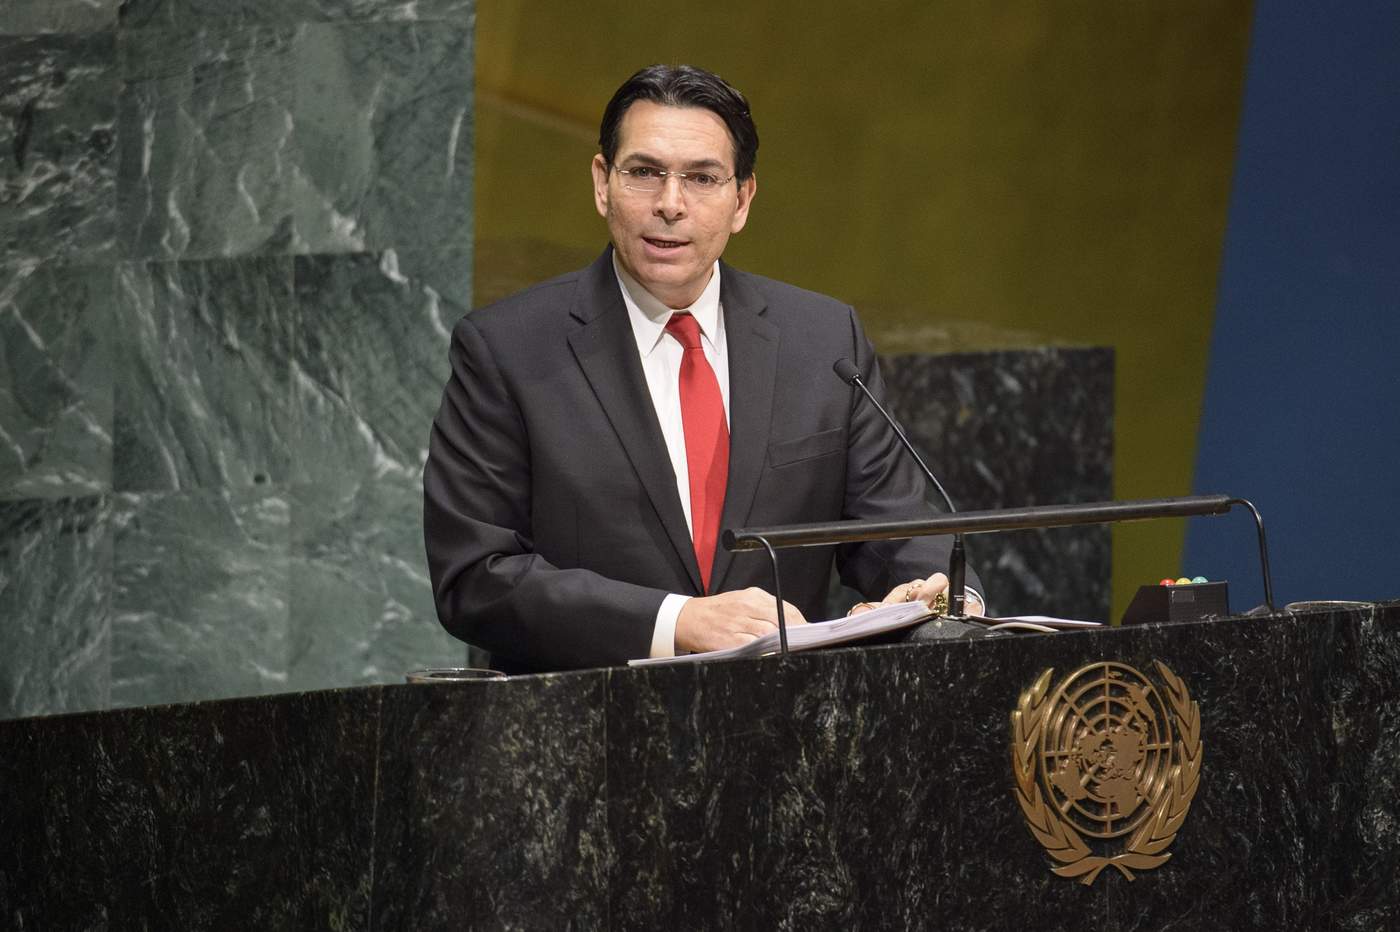 El embajador israelí ante la ONU, Danny Danon, explicó este jueves que habló con la Presidencia del Consejo de Seguridad para dejar claro el rechazo de su país a la iniciativa. (ARCHIVO)